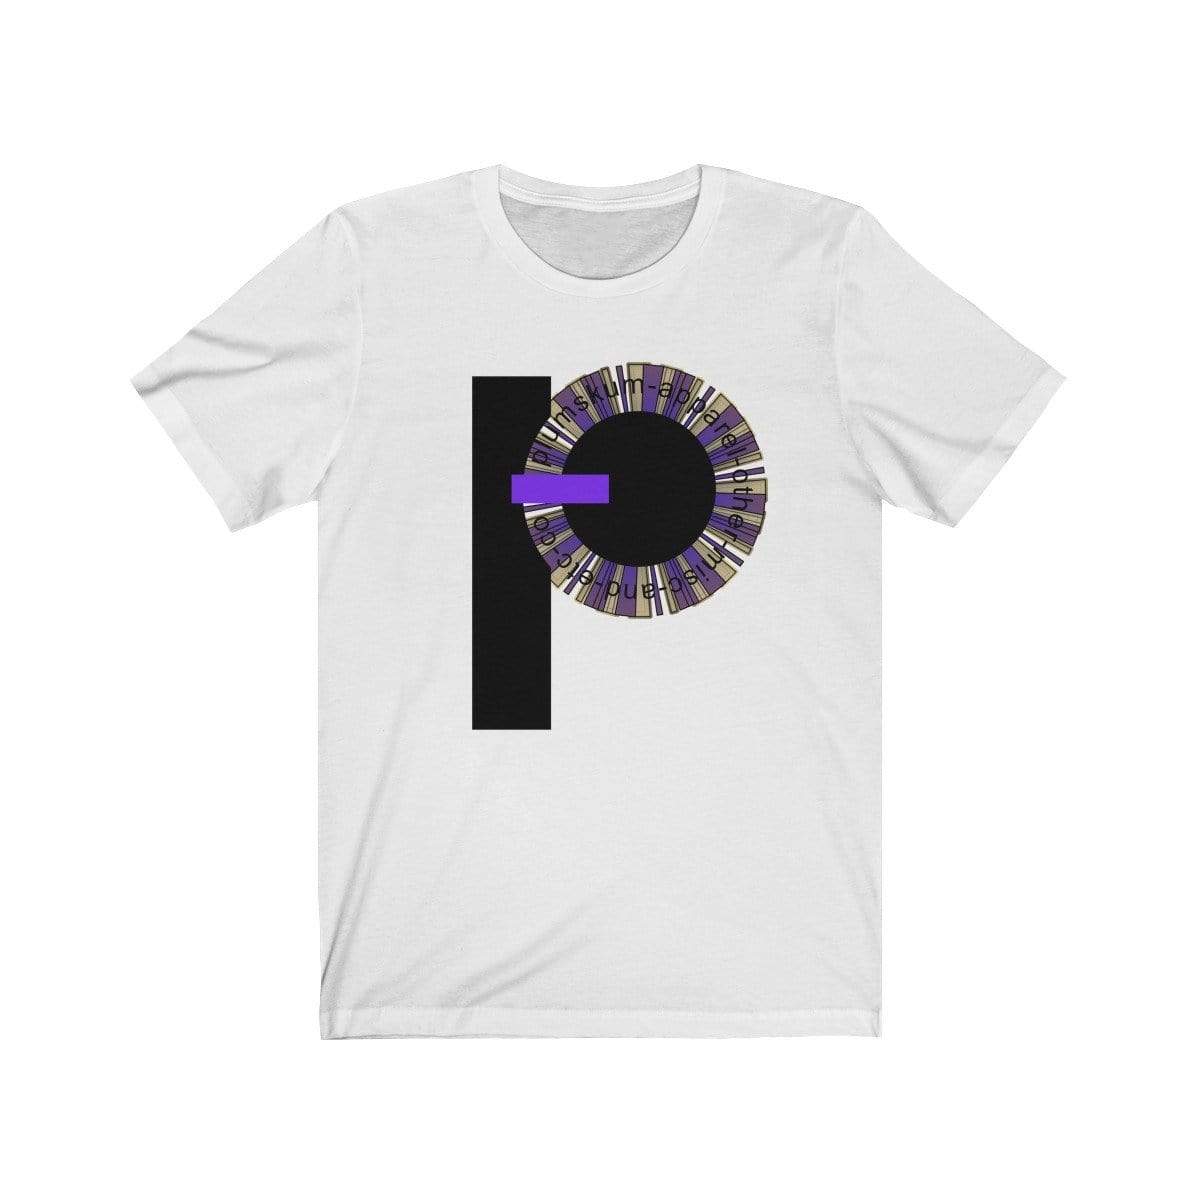 Printify T-Shirt White / XS Plumskum Pinwheel Etc. Co. TShirt